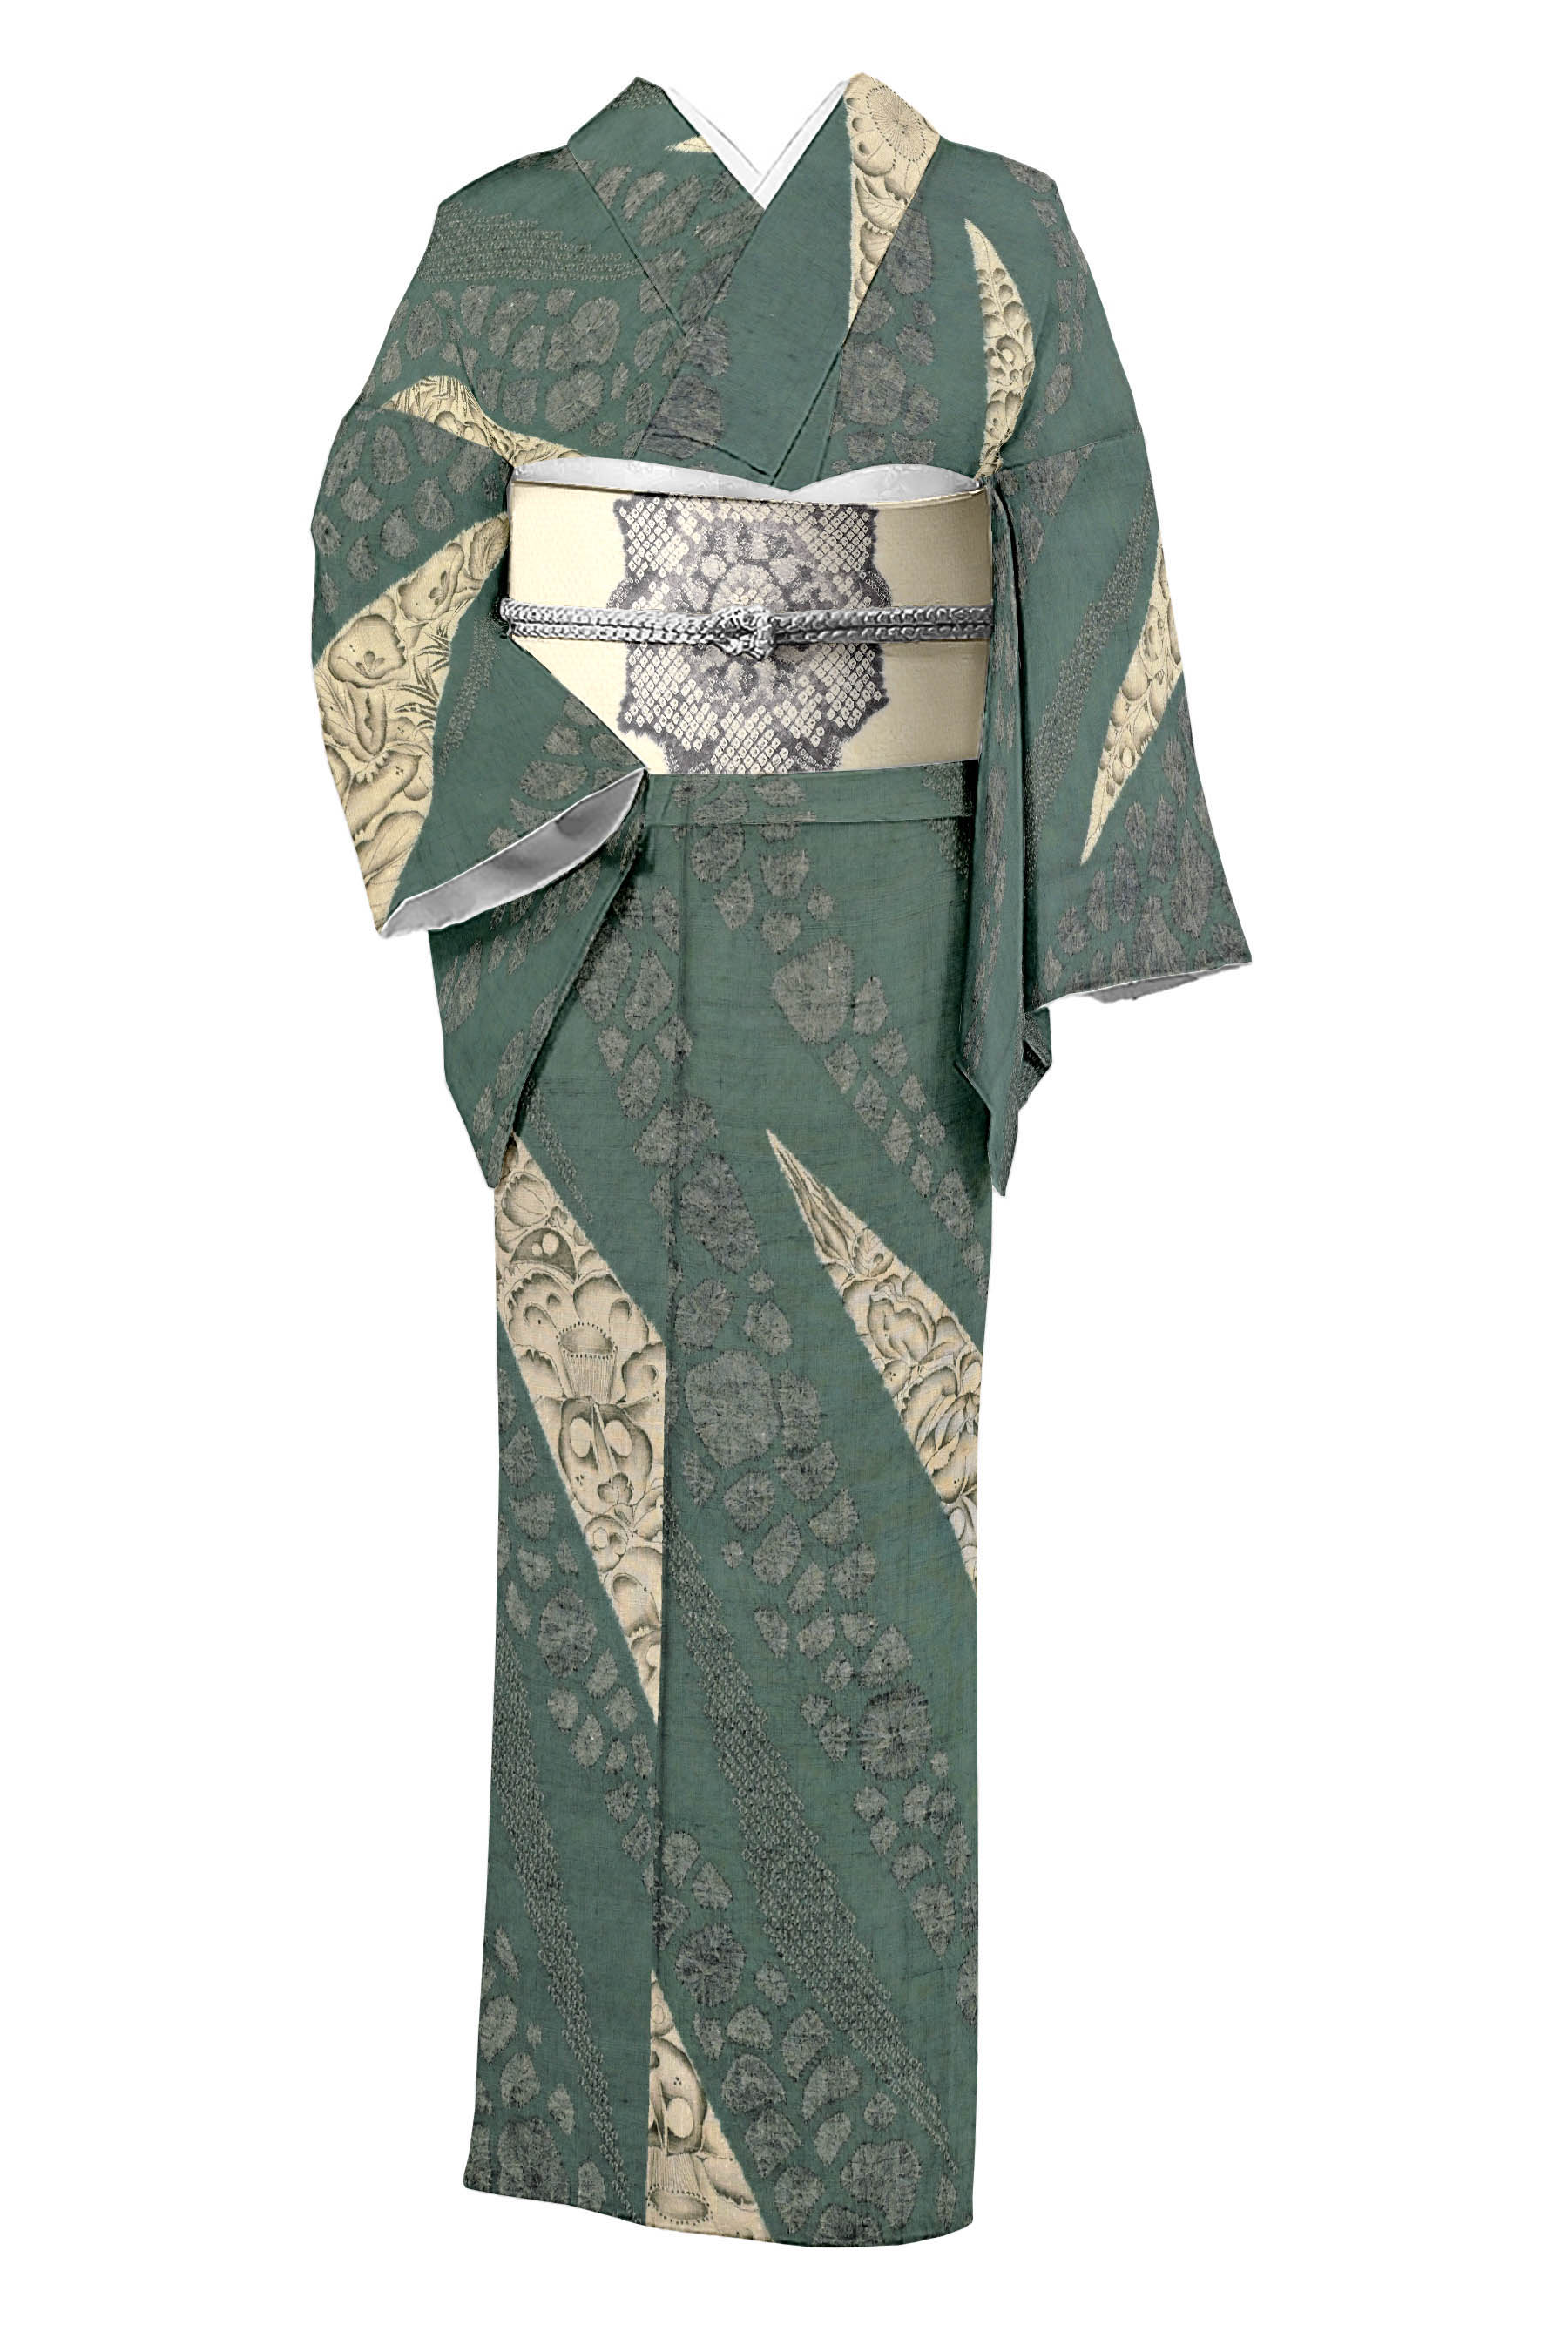 大脇一心の着物・帯の一覧|京都きもの市場【日本最大級の着物通販サイト】